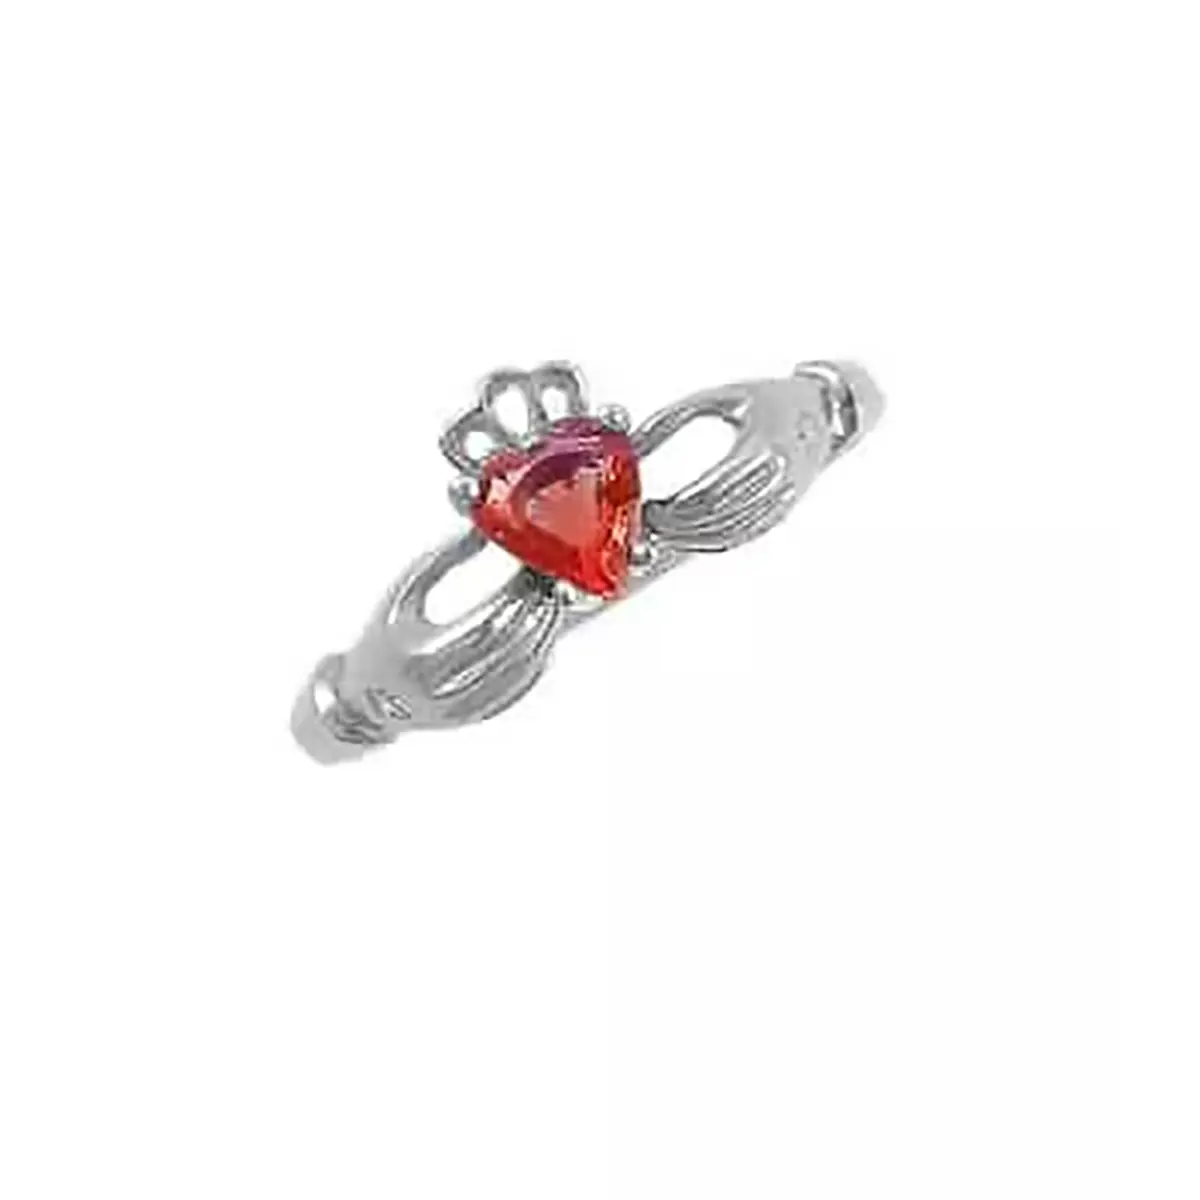 Heartshape Ruby Diamond Claddagh Ring